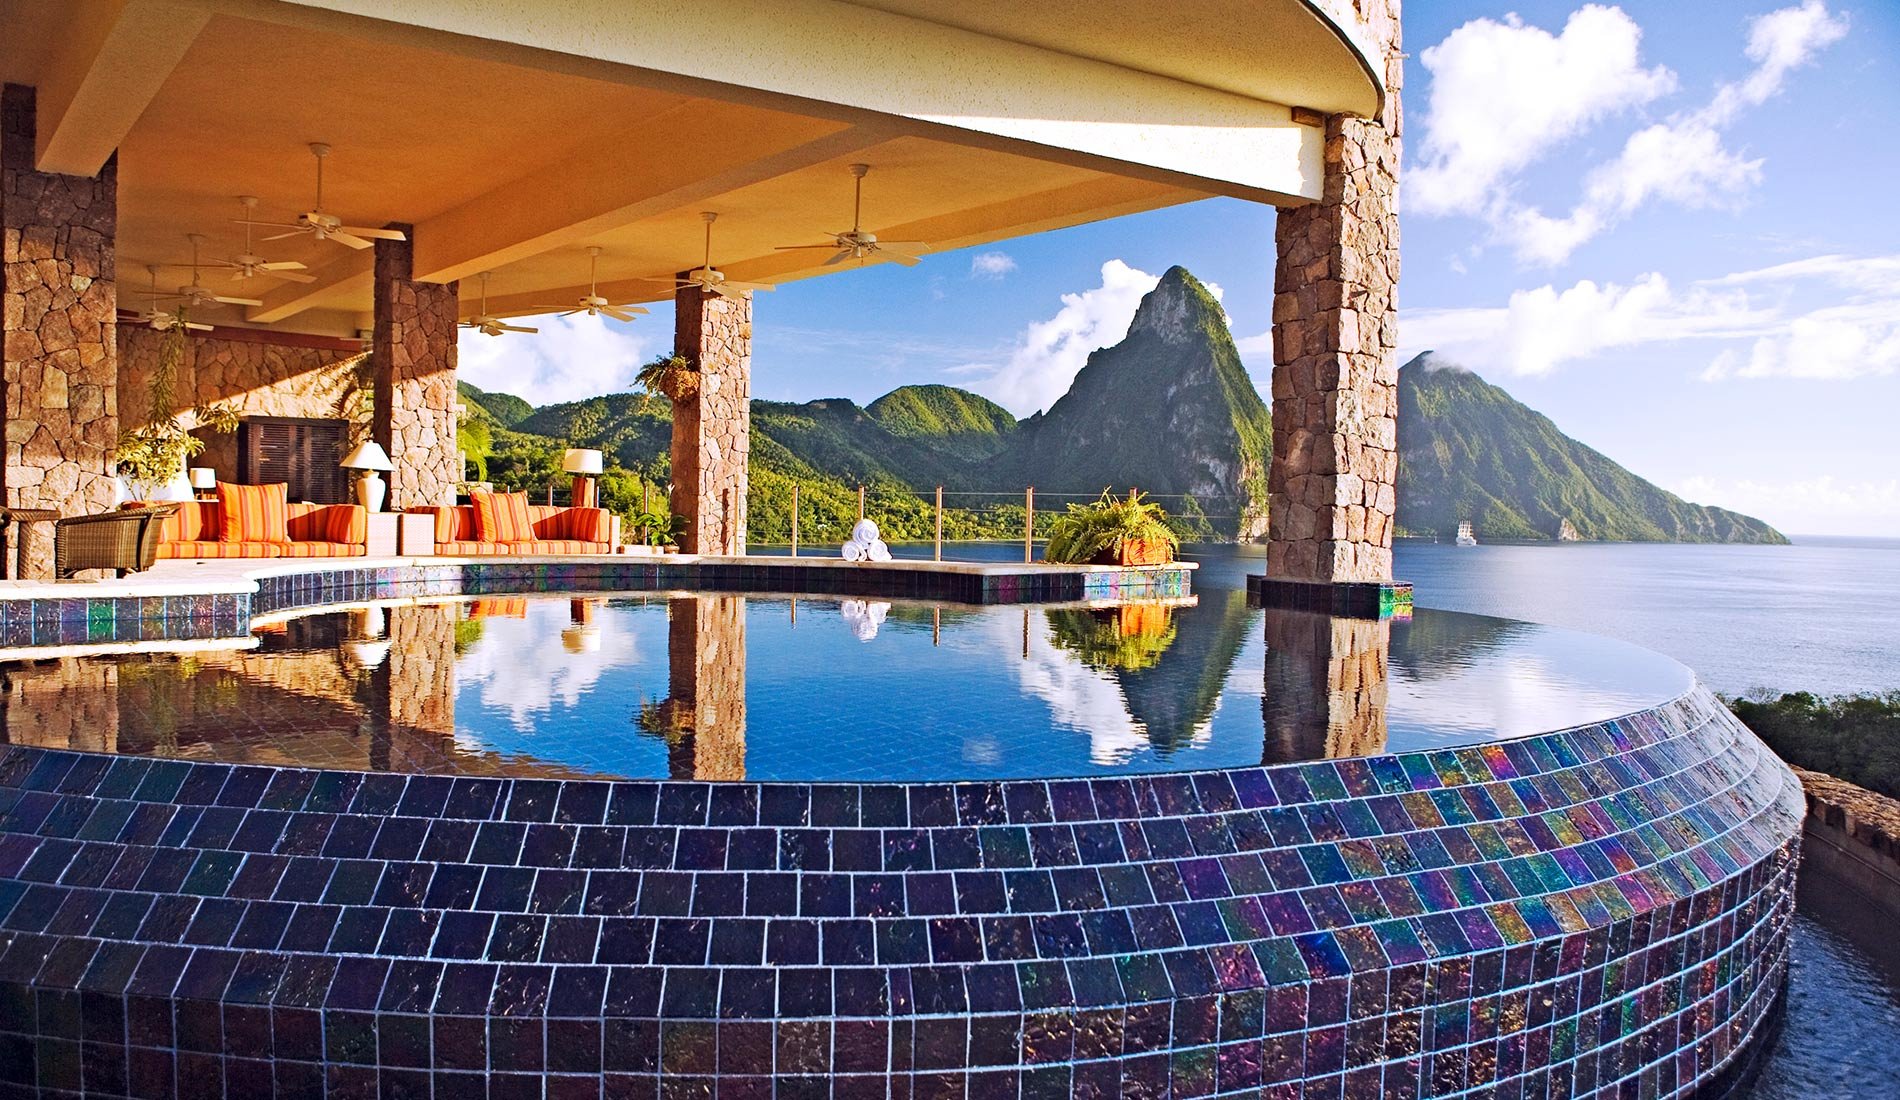 Hôtel de luxe Jade Mountain resort 5* Sainte-Lucie caraïbes piscine à débordement